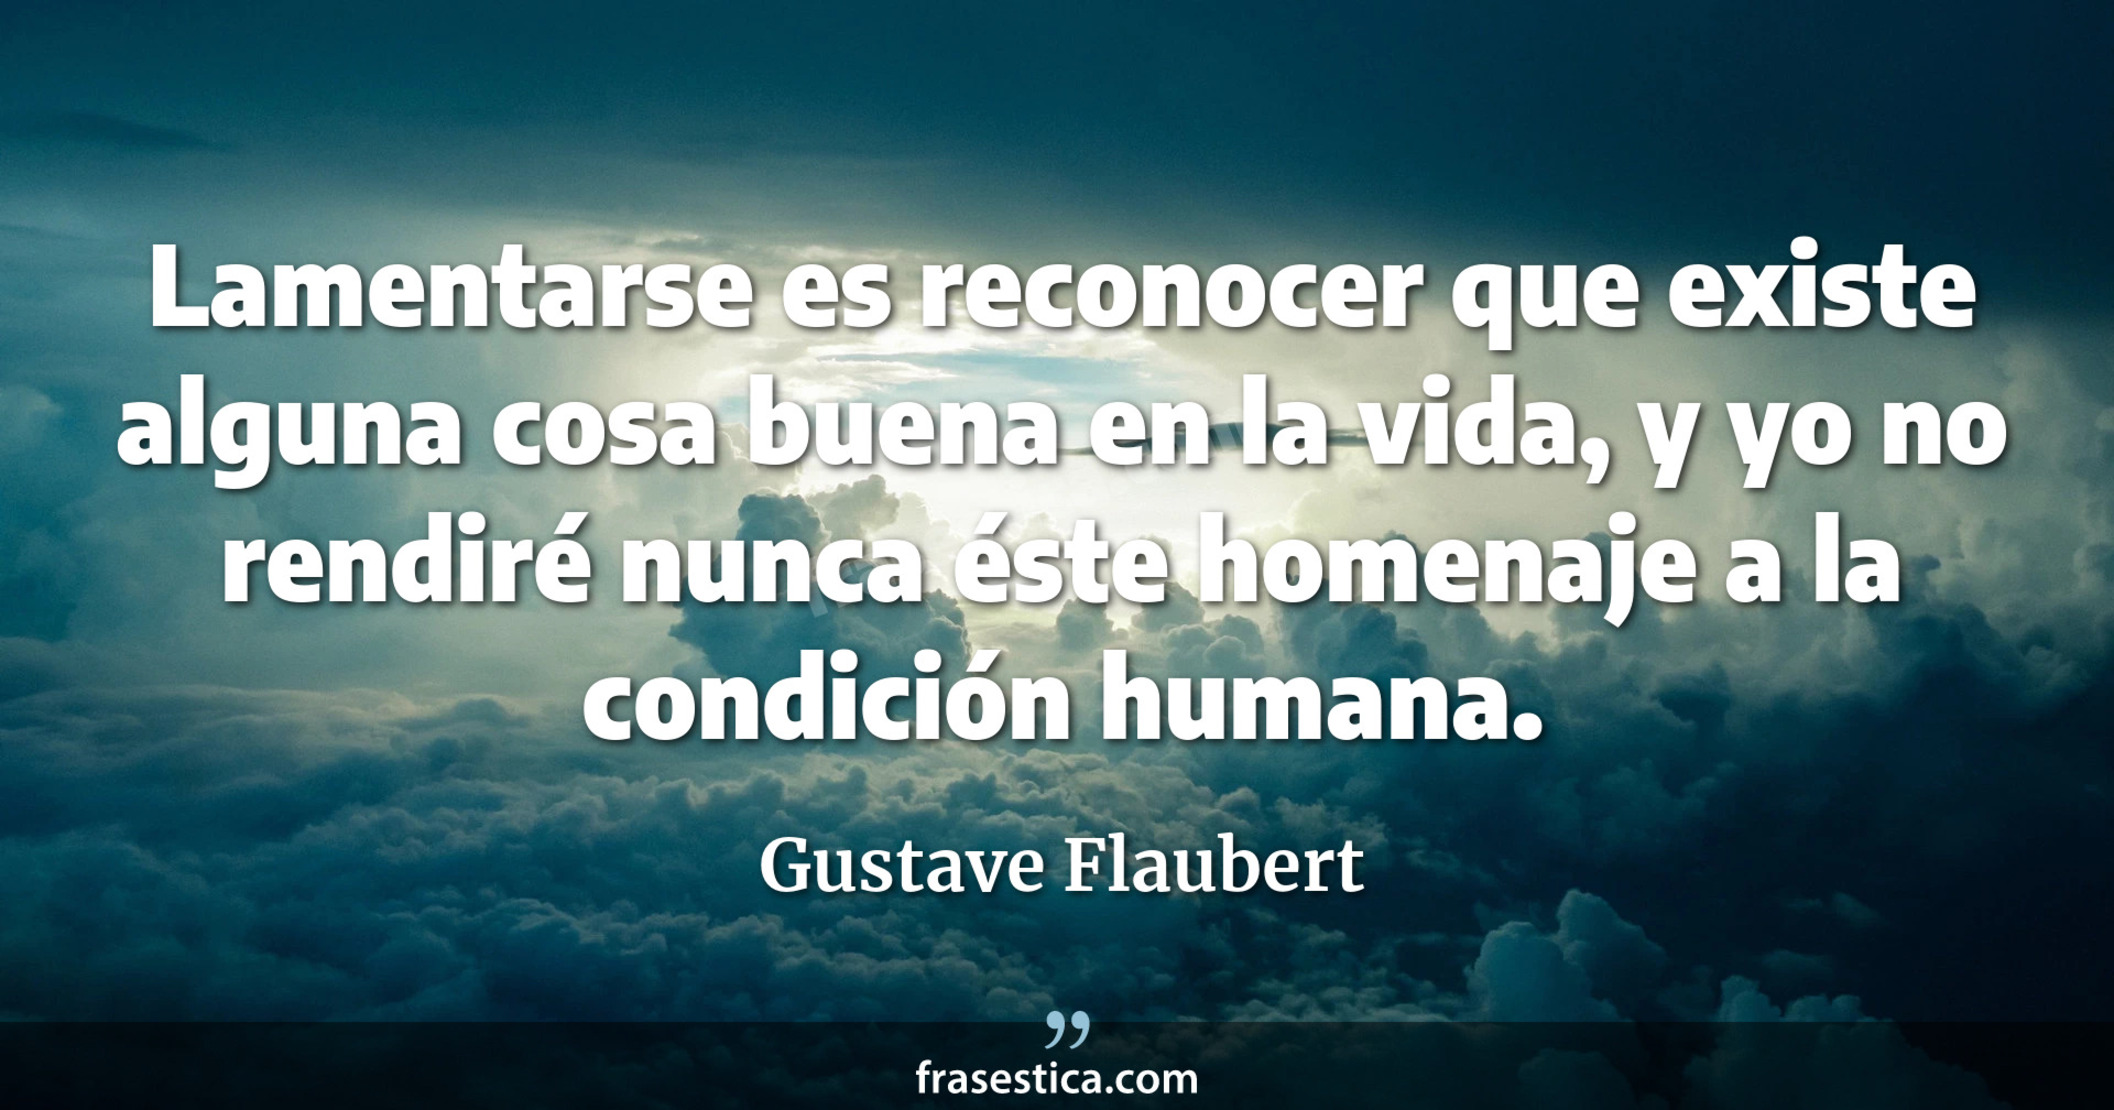 Lamentarse es reconocer que existe alguna cosa buena en la vida, y yo no rendiré nunca éste homenaje a la condición humana. - Gustave Flaubert